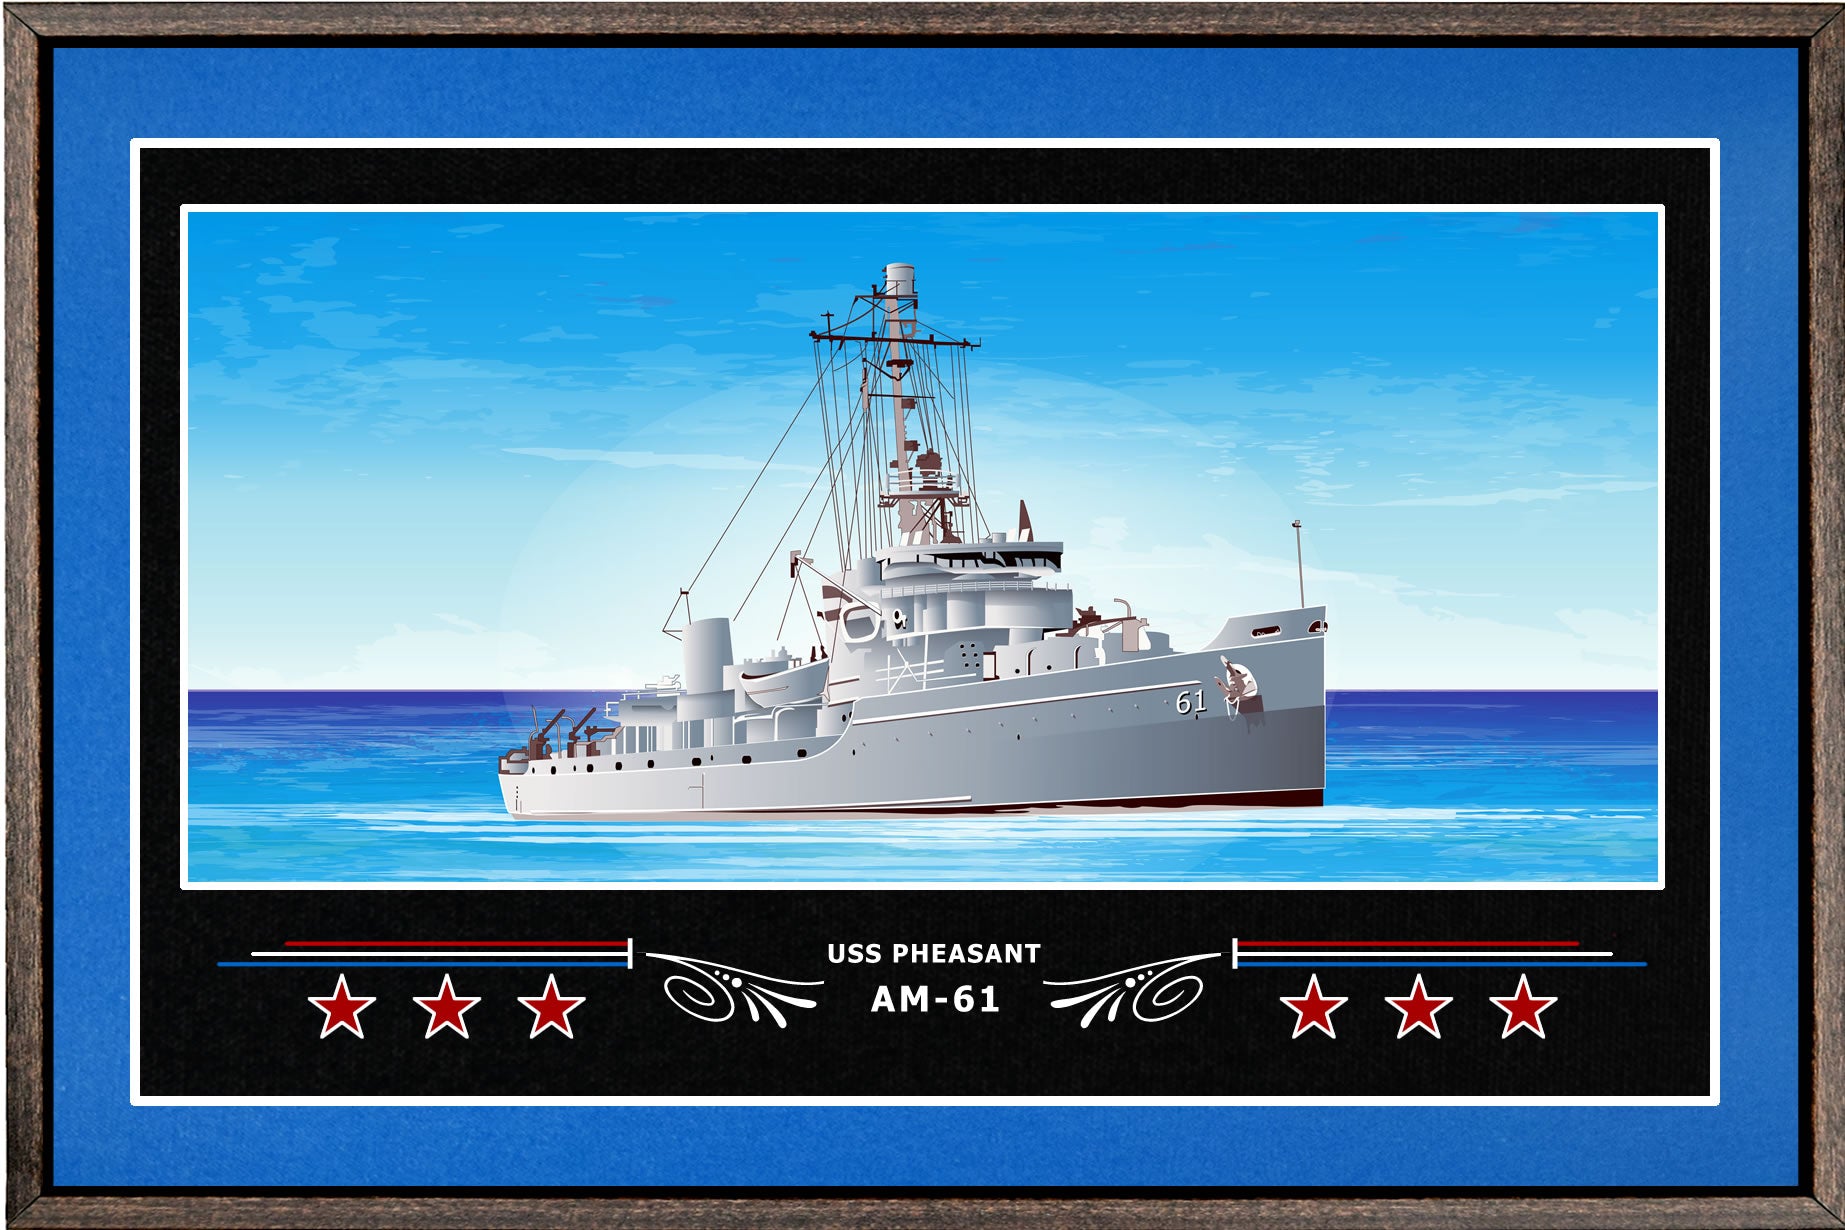 USS PHEASANT AM 61 BOX FRAMED CANVAS ART BLUE